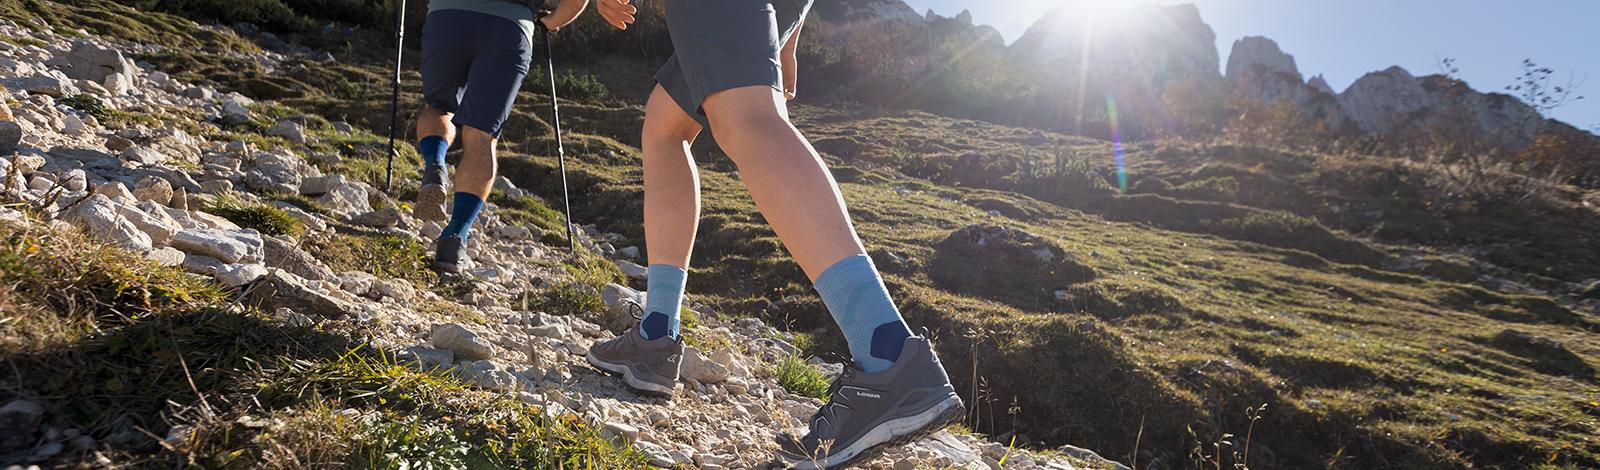 Closwholstery di un escursionista nelle scarpe da trekking e con calzini escursionistici a media lunghezza che percorrono un sentiero pietroso sullo sfondo il suo compagno di escursioni